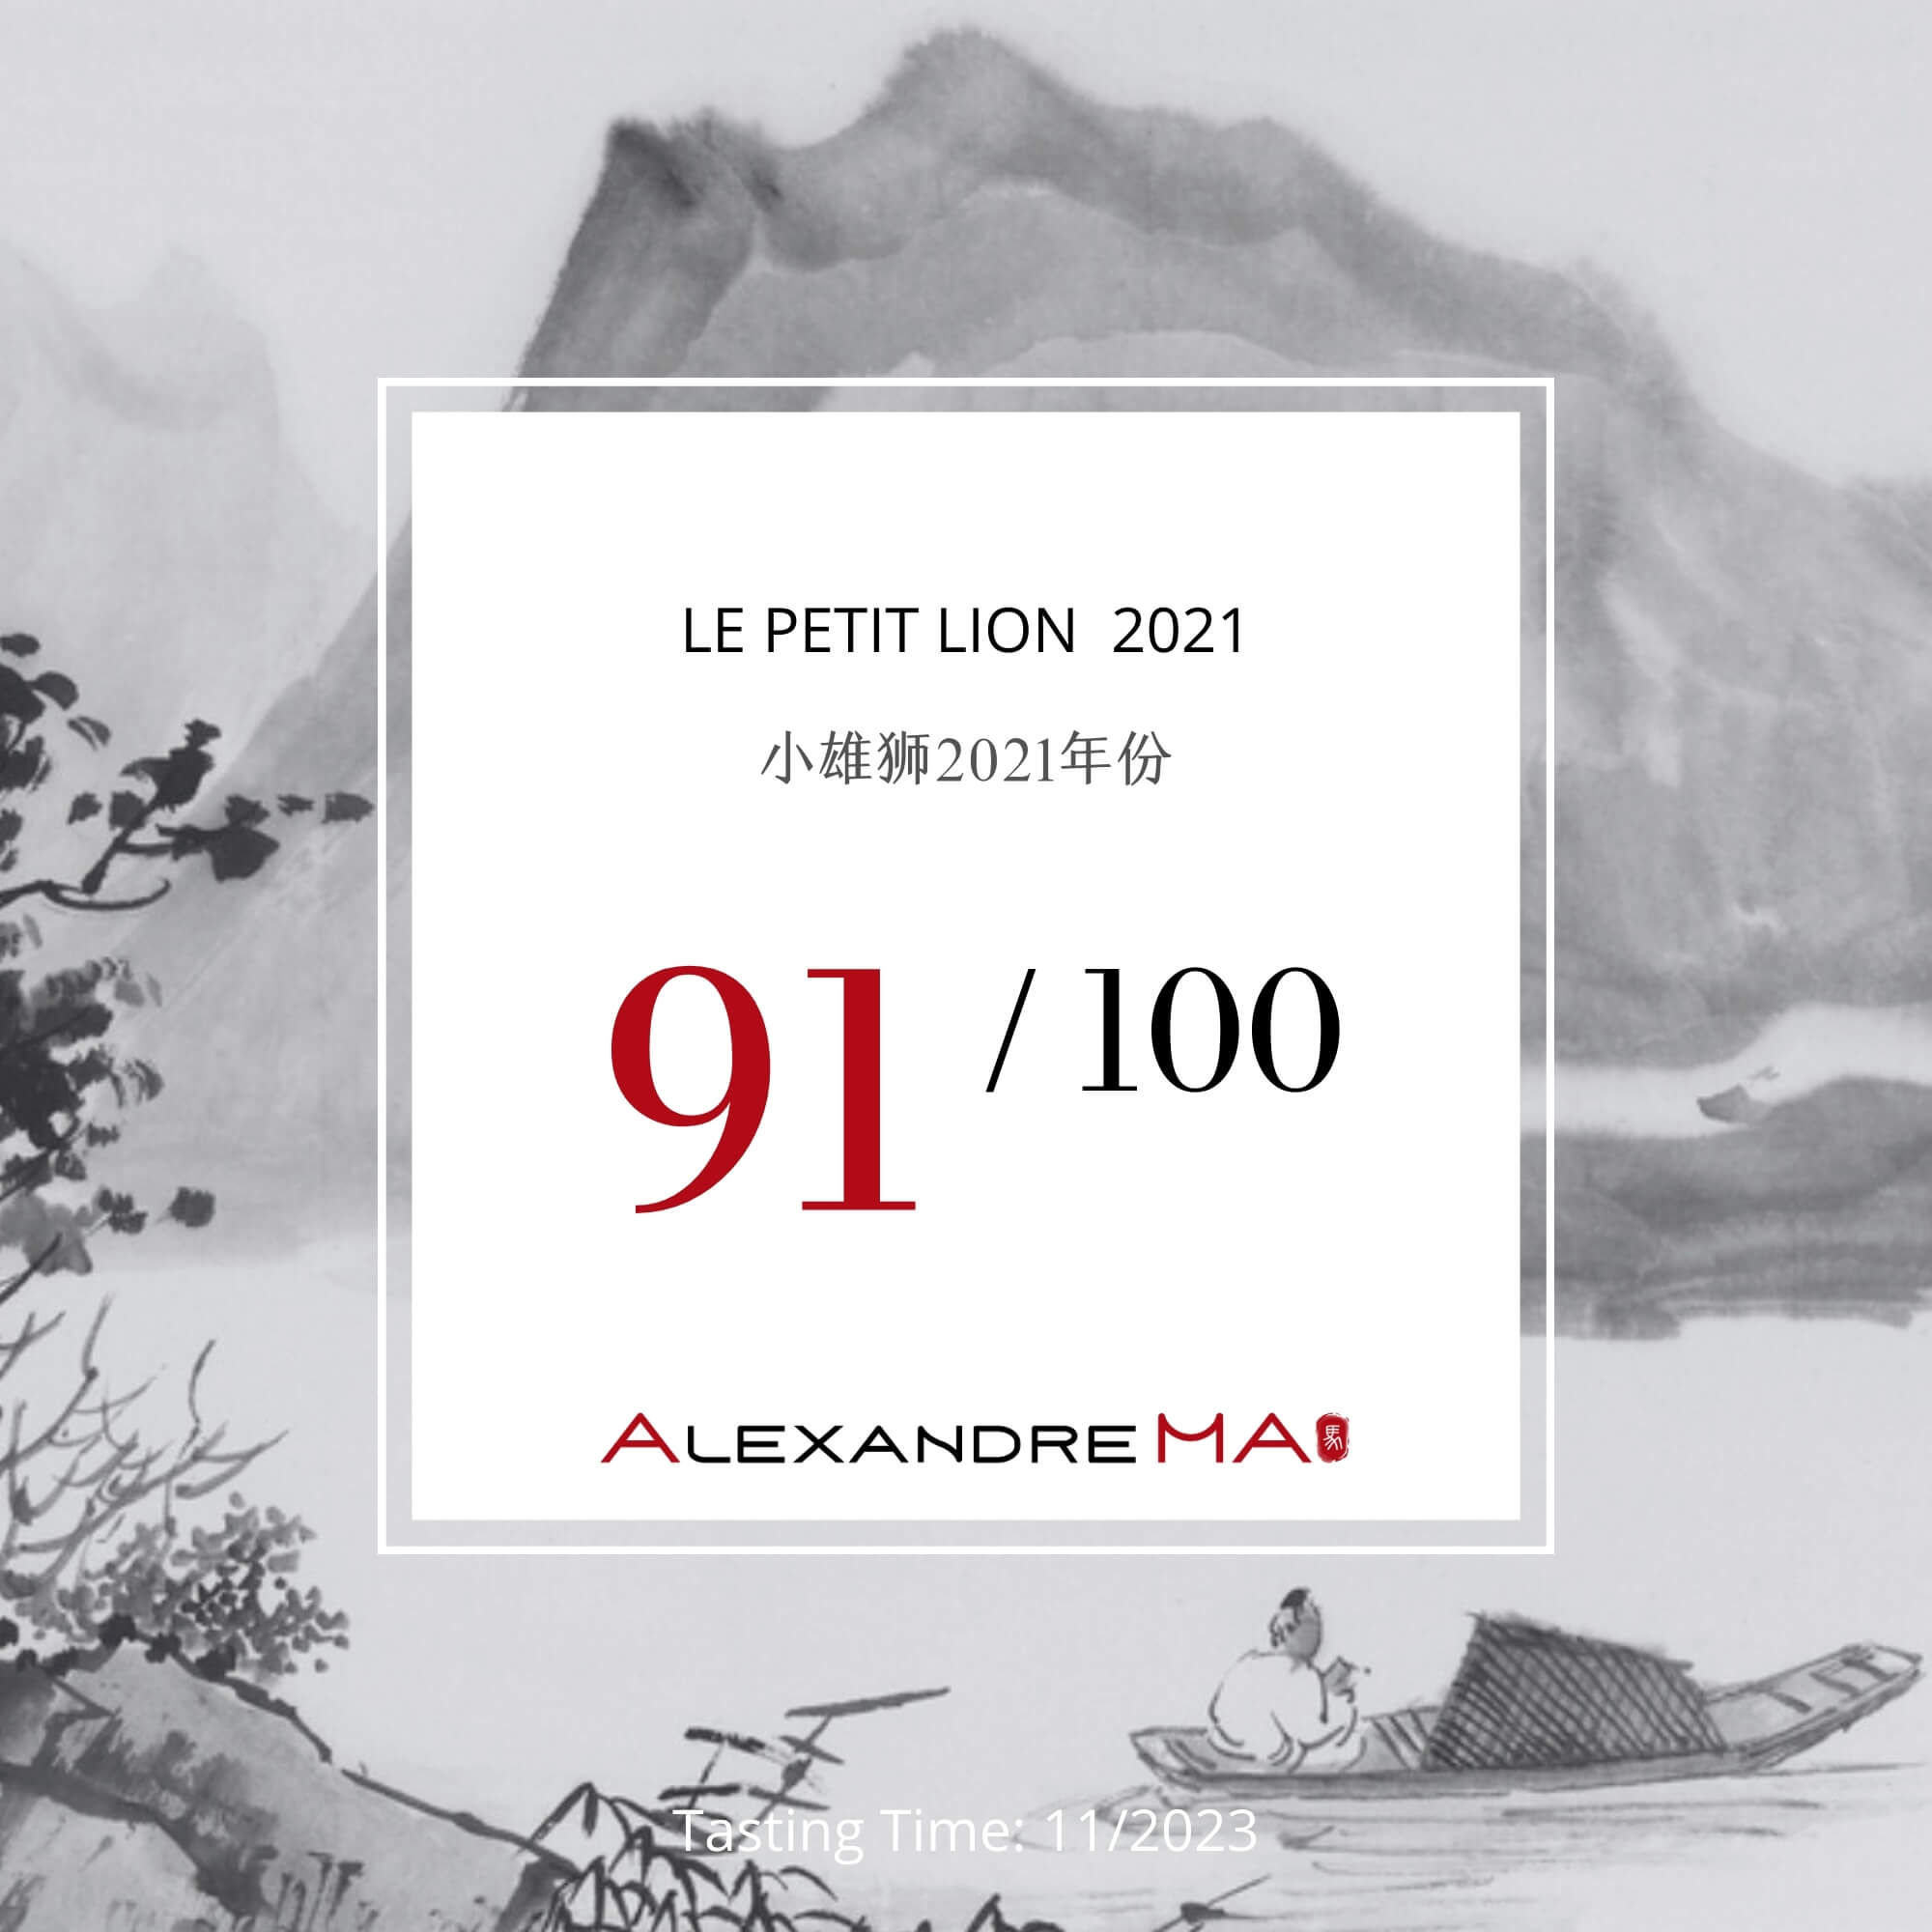 Le Petit Lion 2021 - Alexandre MA